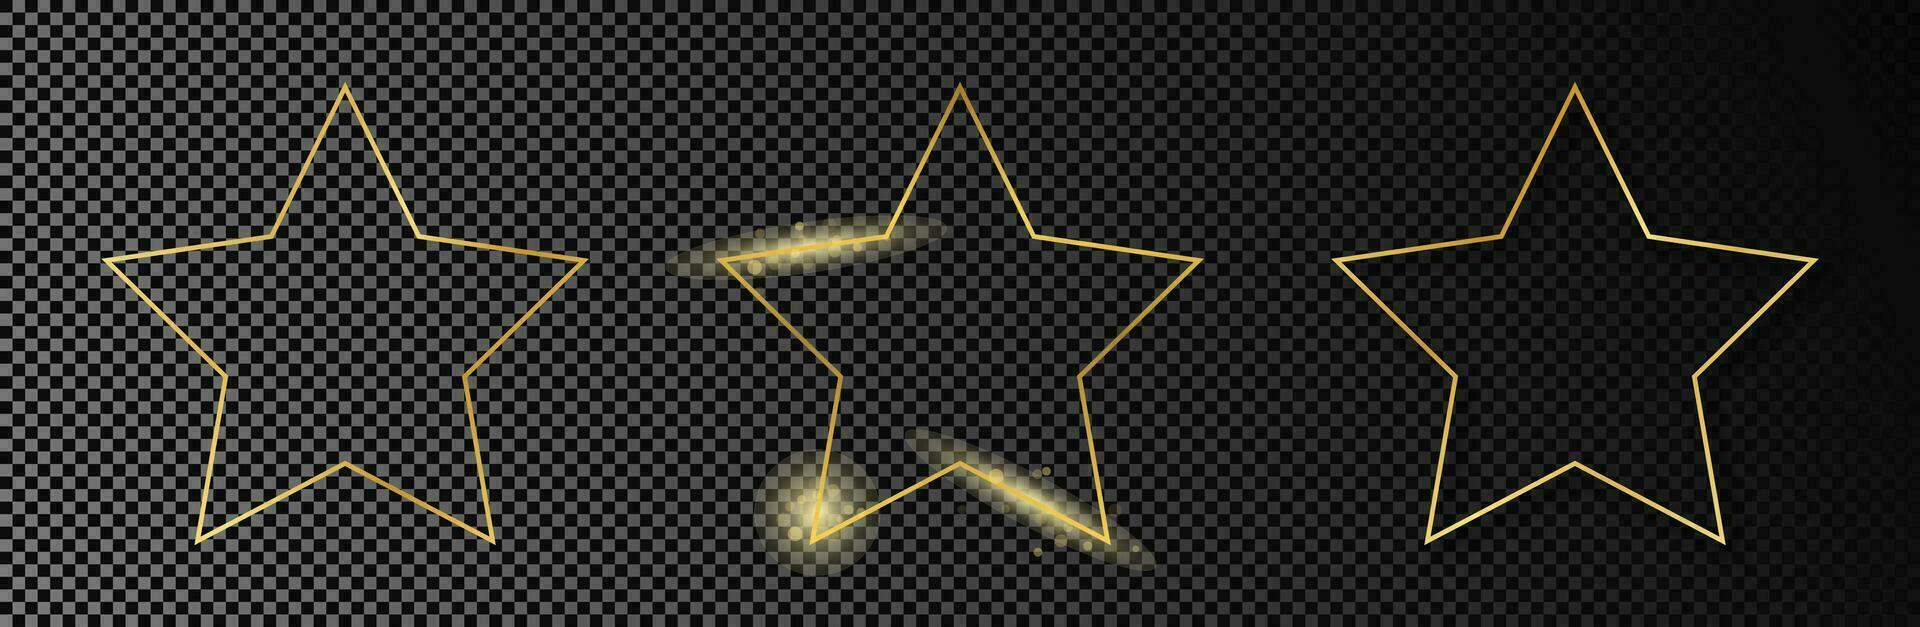 goud gloeiend ster vorm kader vector